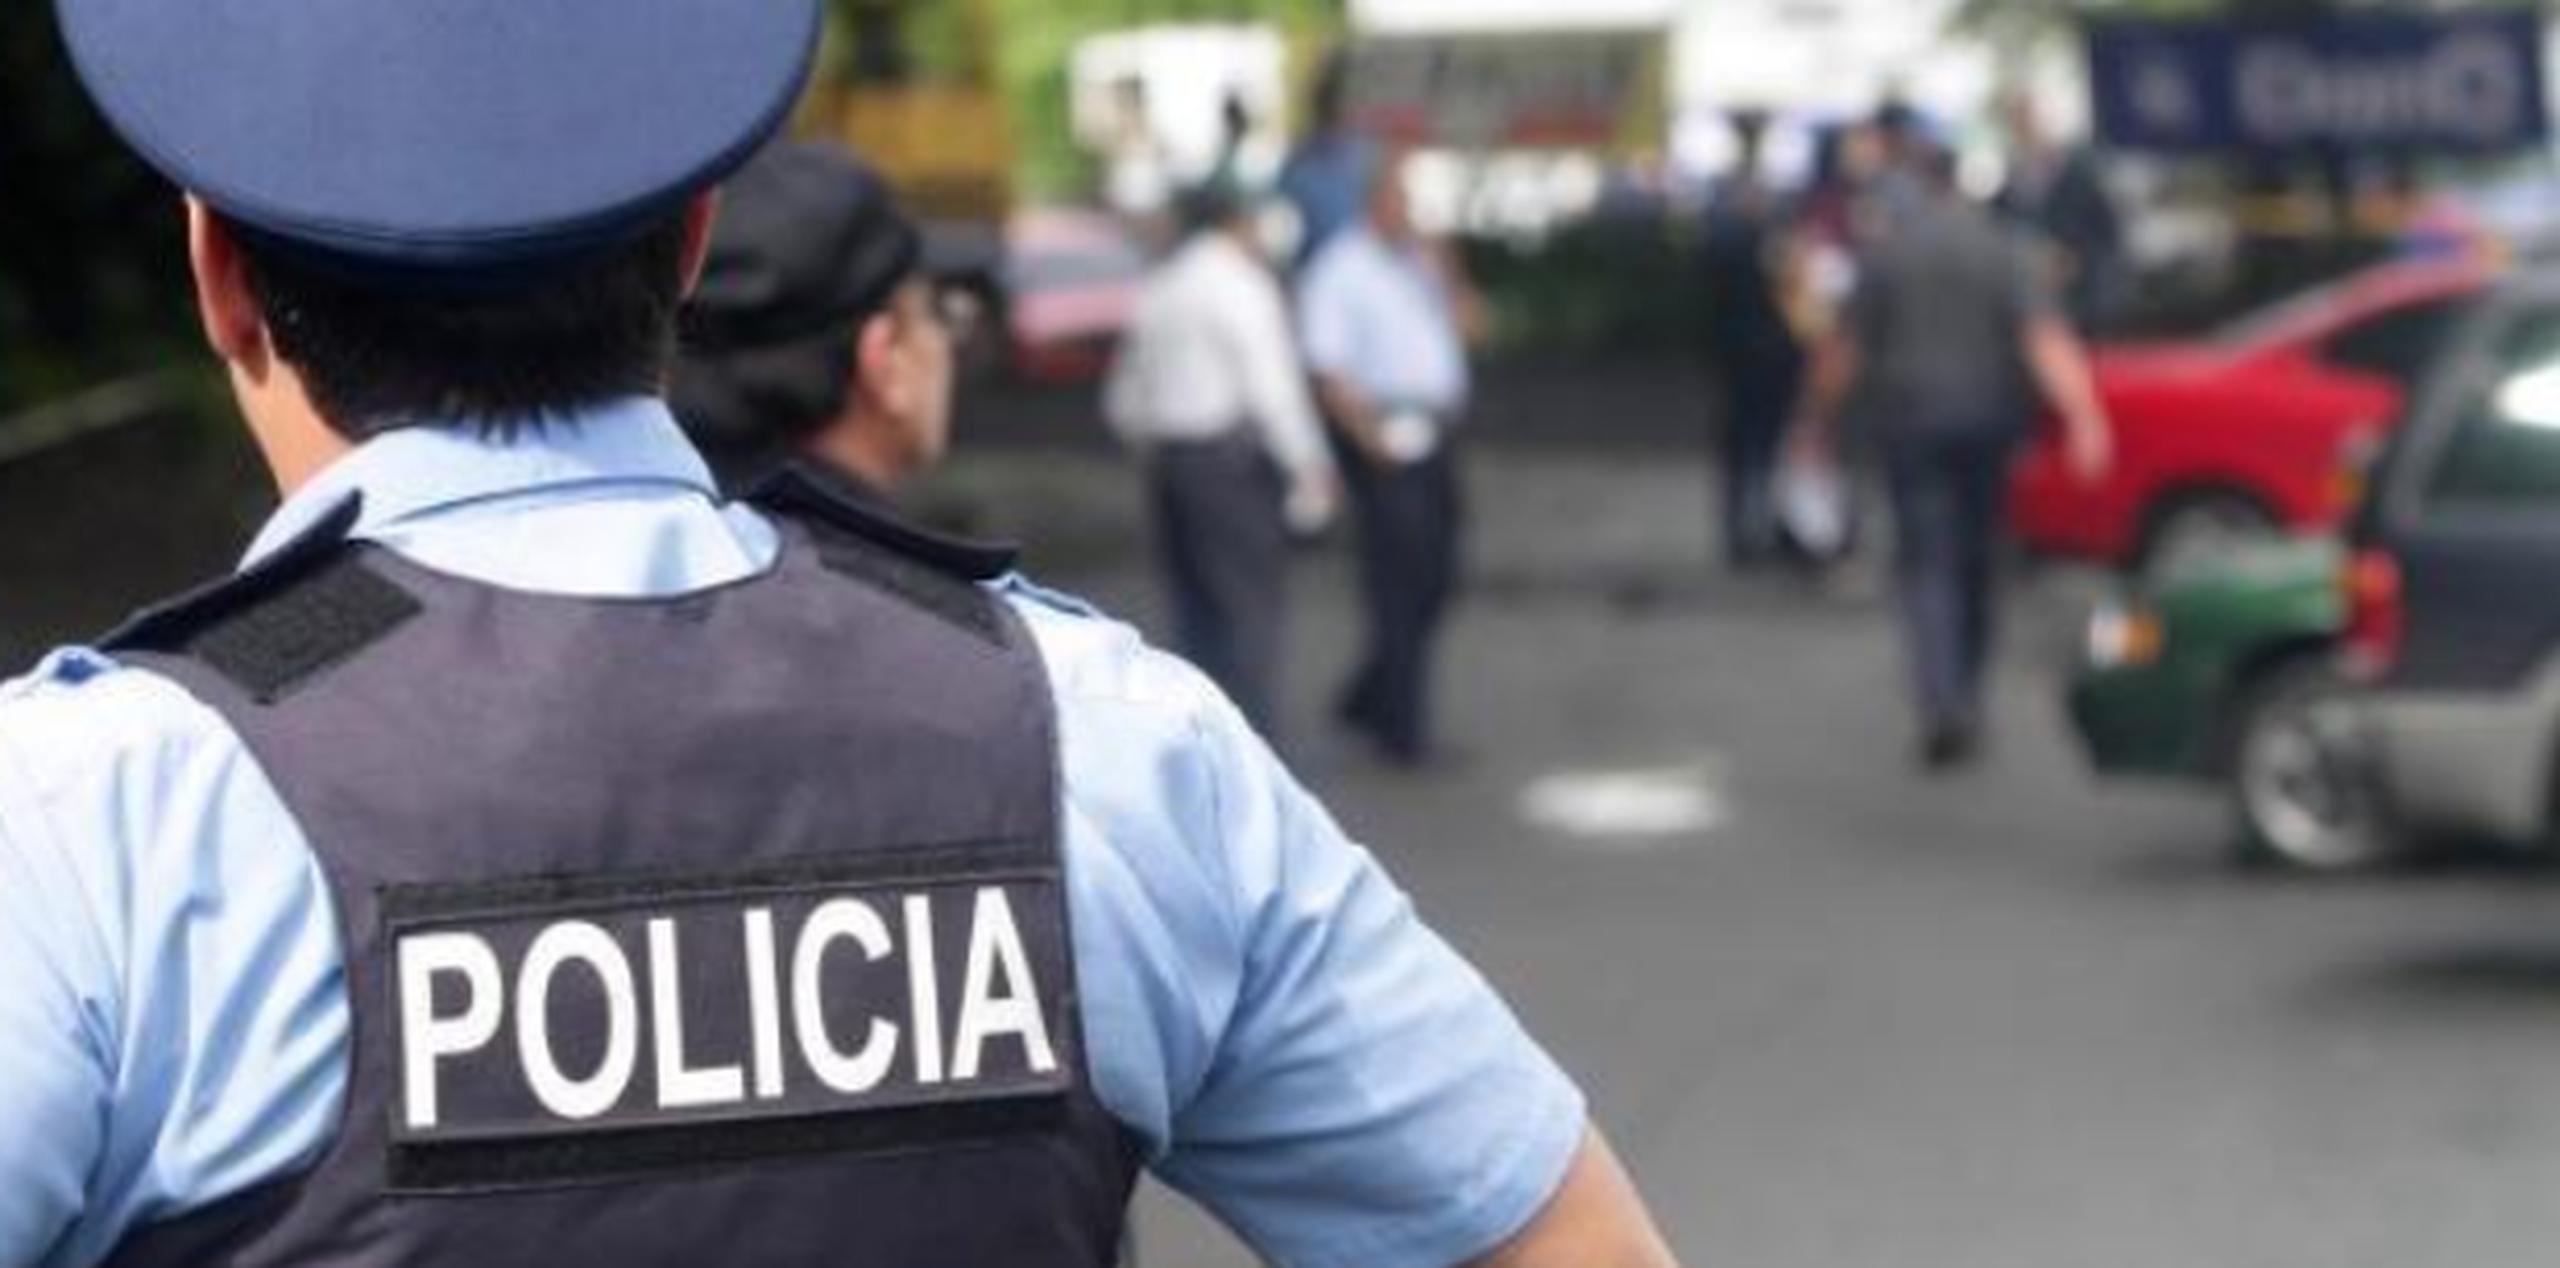 La víctima residente en Gurabo falleció a consecuencia de los golpes sufridos, según el informe de novedades de la Policía. (Archivo)